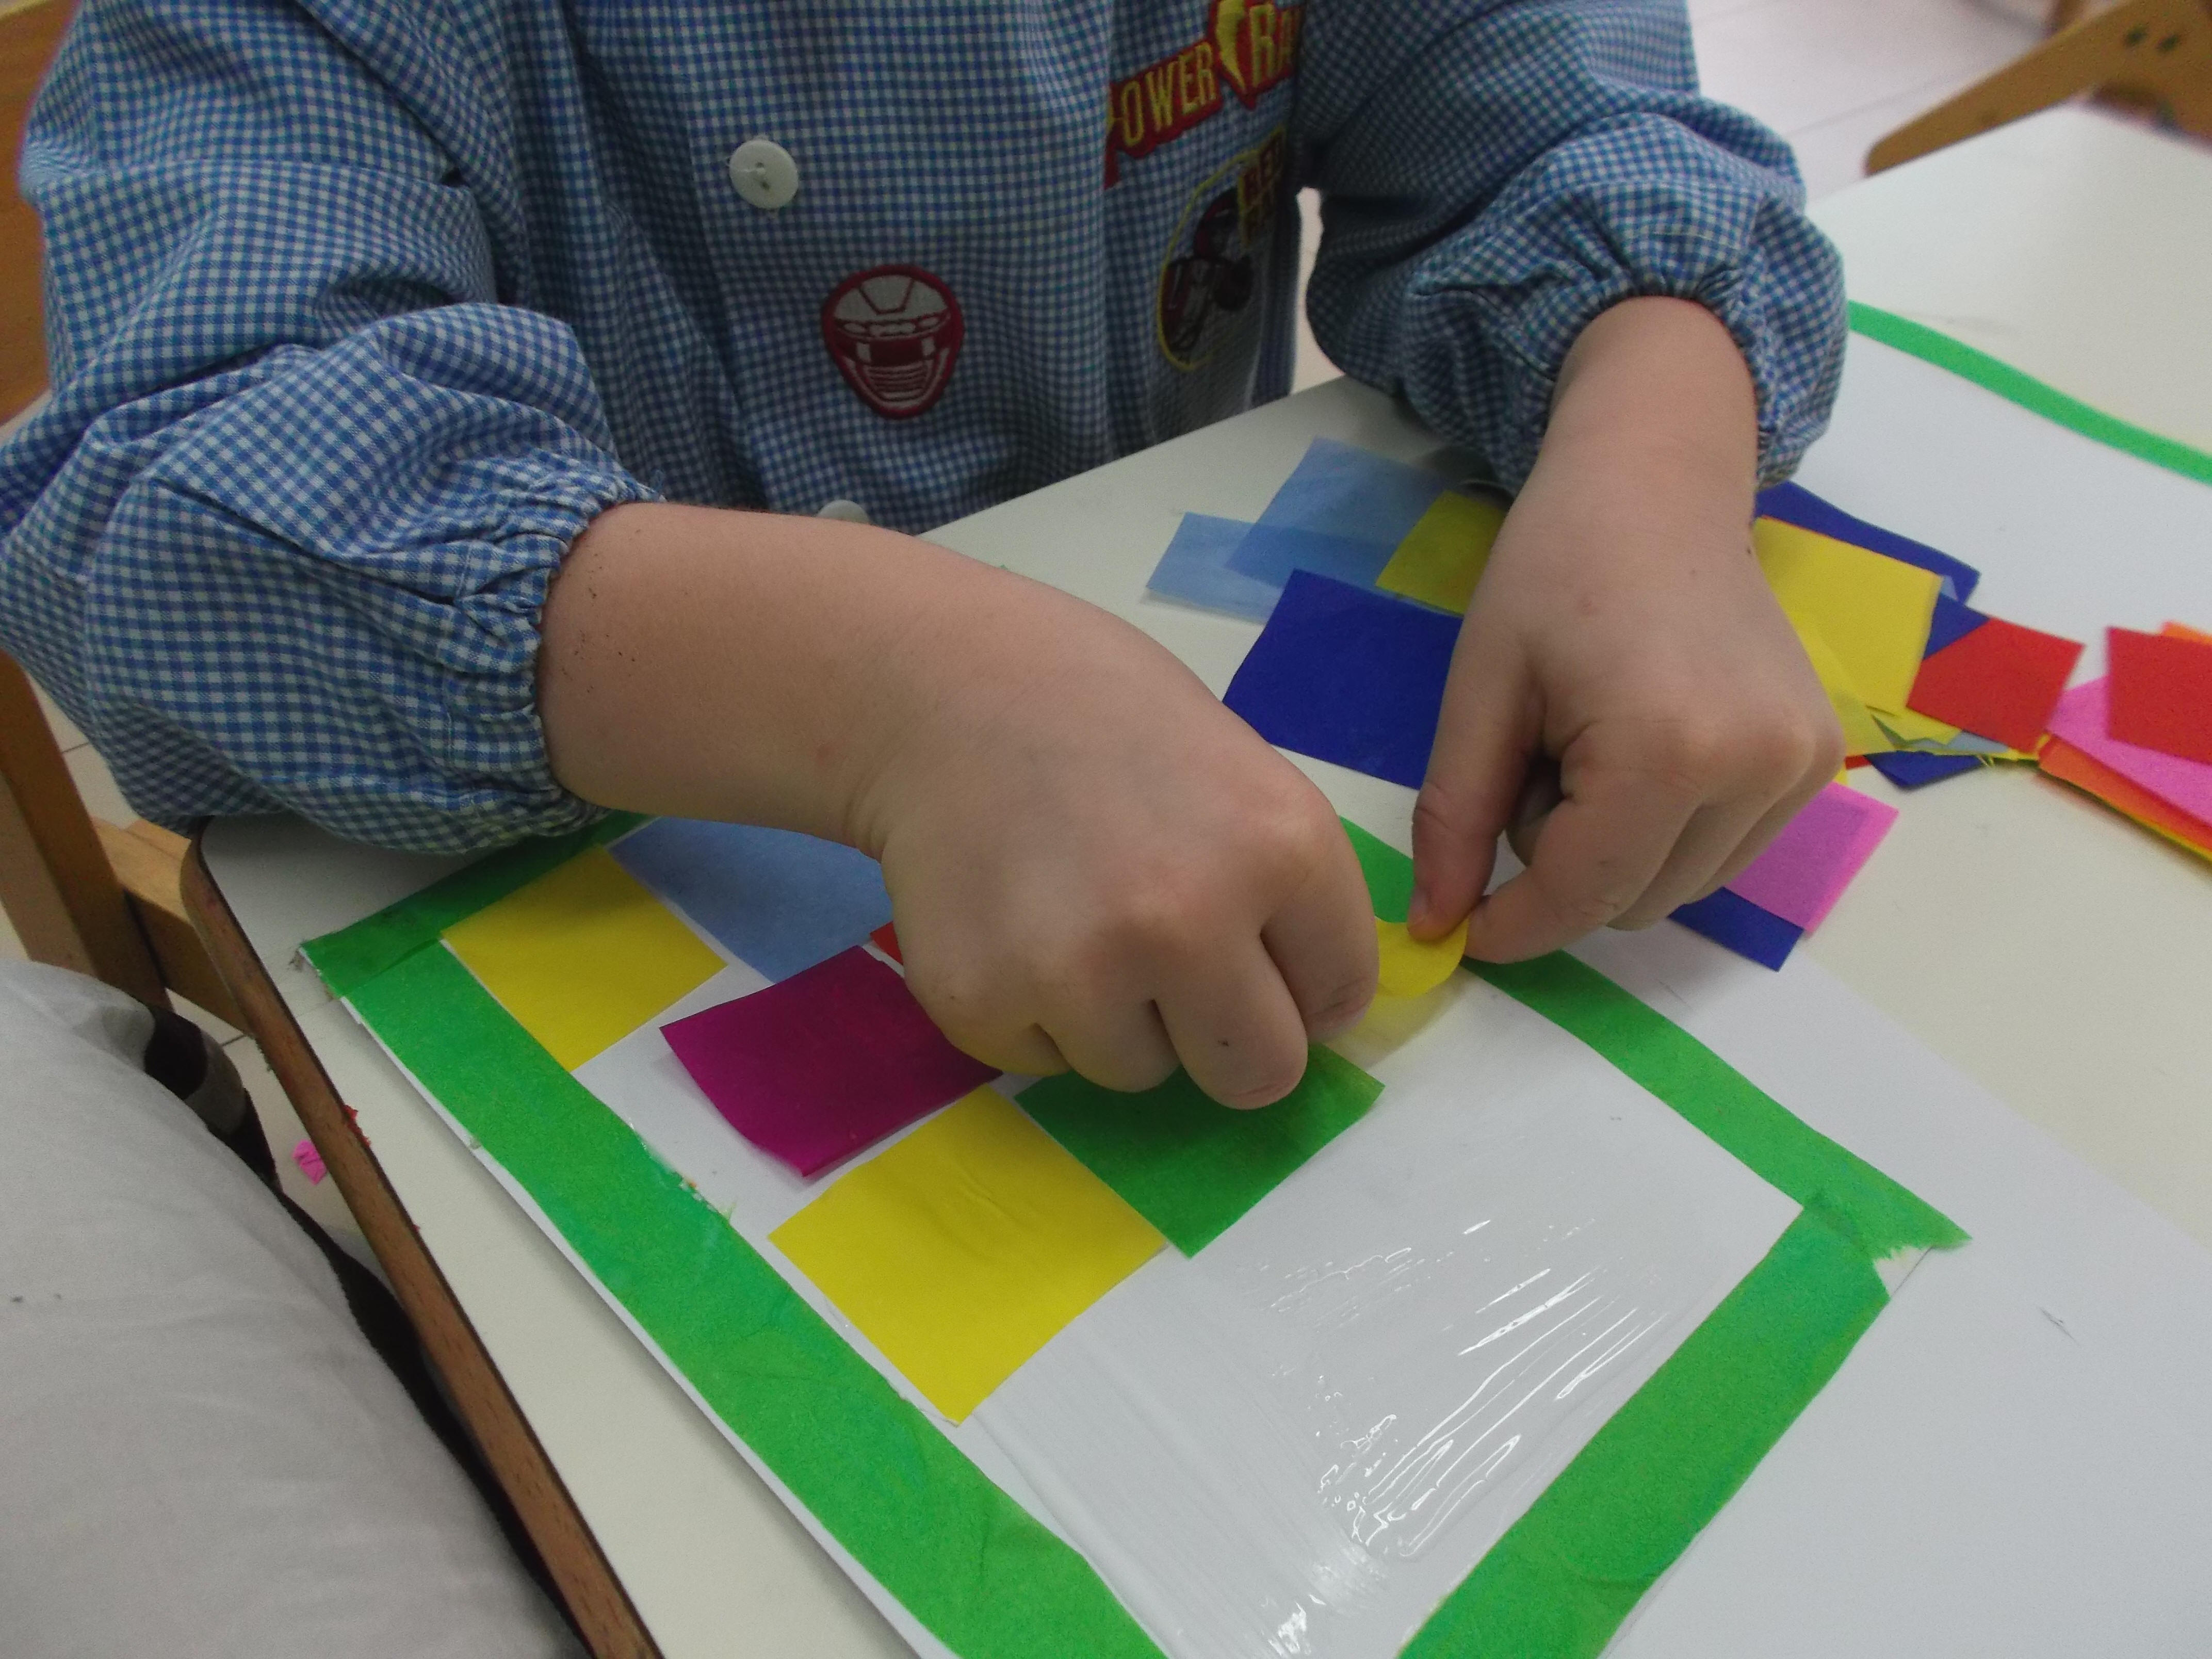 bambini che fanno collage con pezzettini di carta velina colorata per realizzare lo sfondo